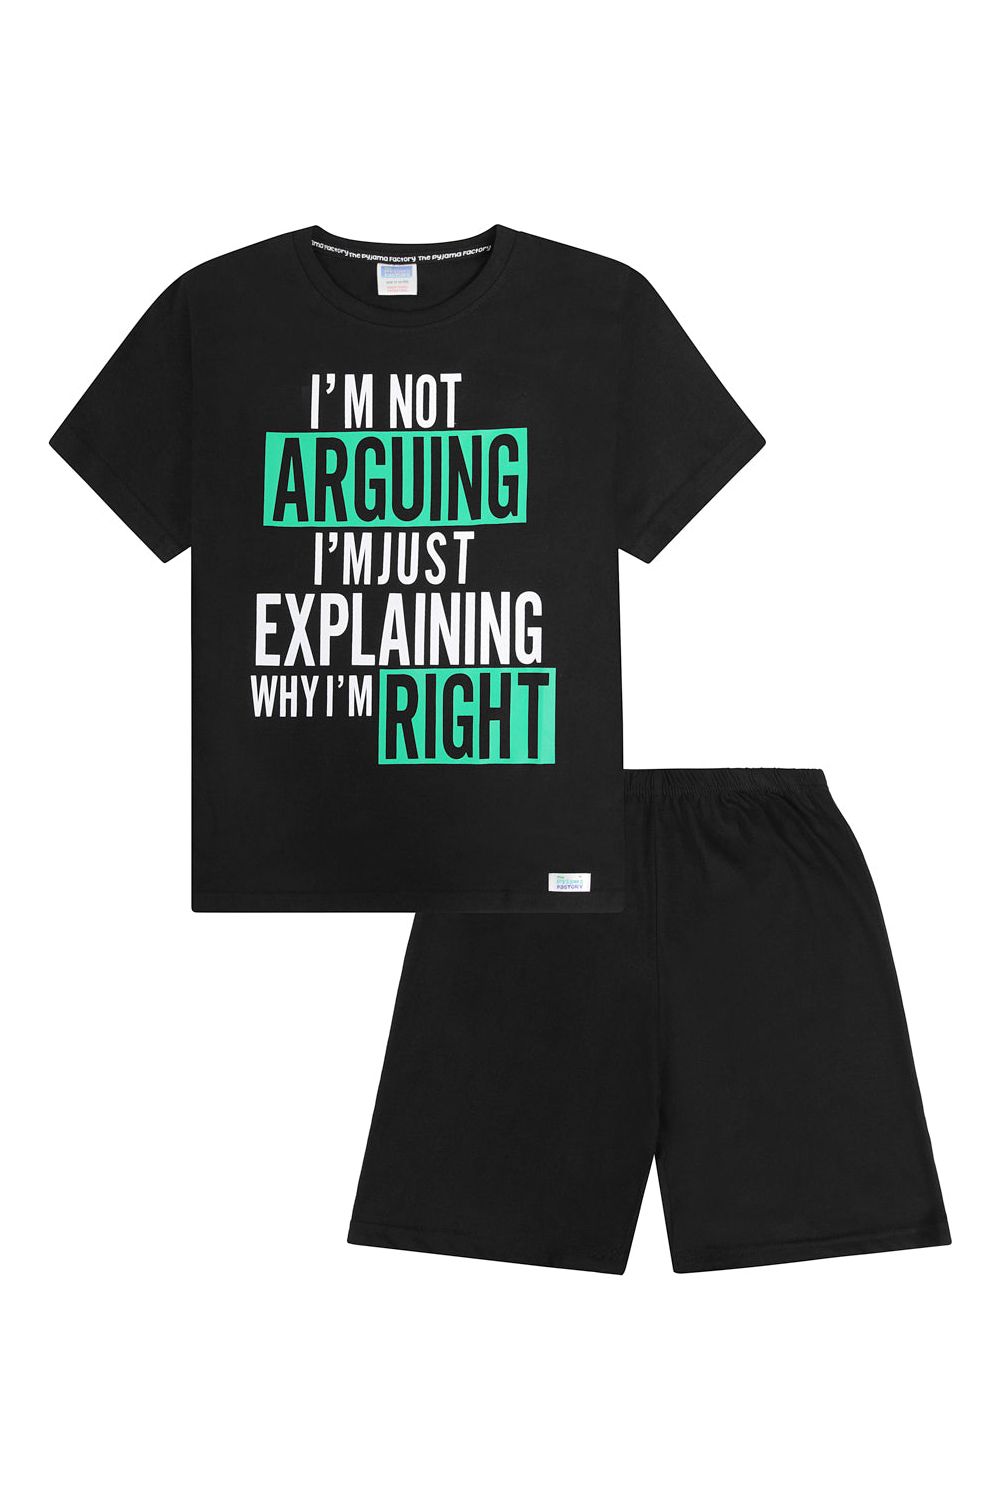 I'm Not Arguing I'm Just Explaining Why I'm Right Cotton Short Pyjamas - Pyjamas.com